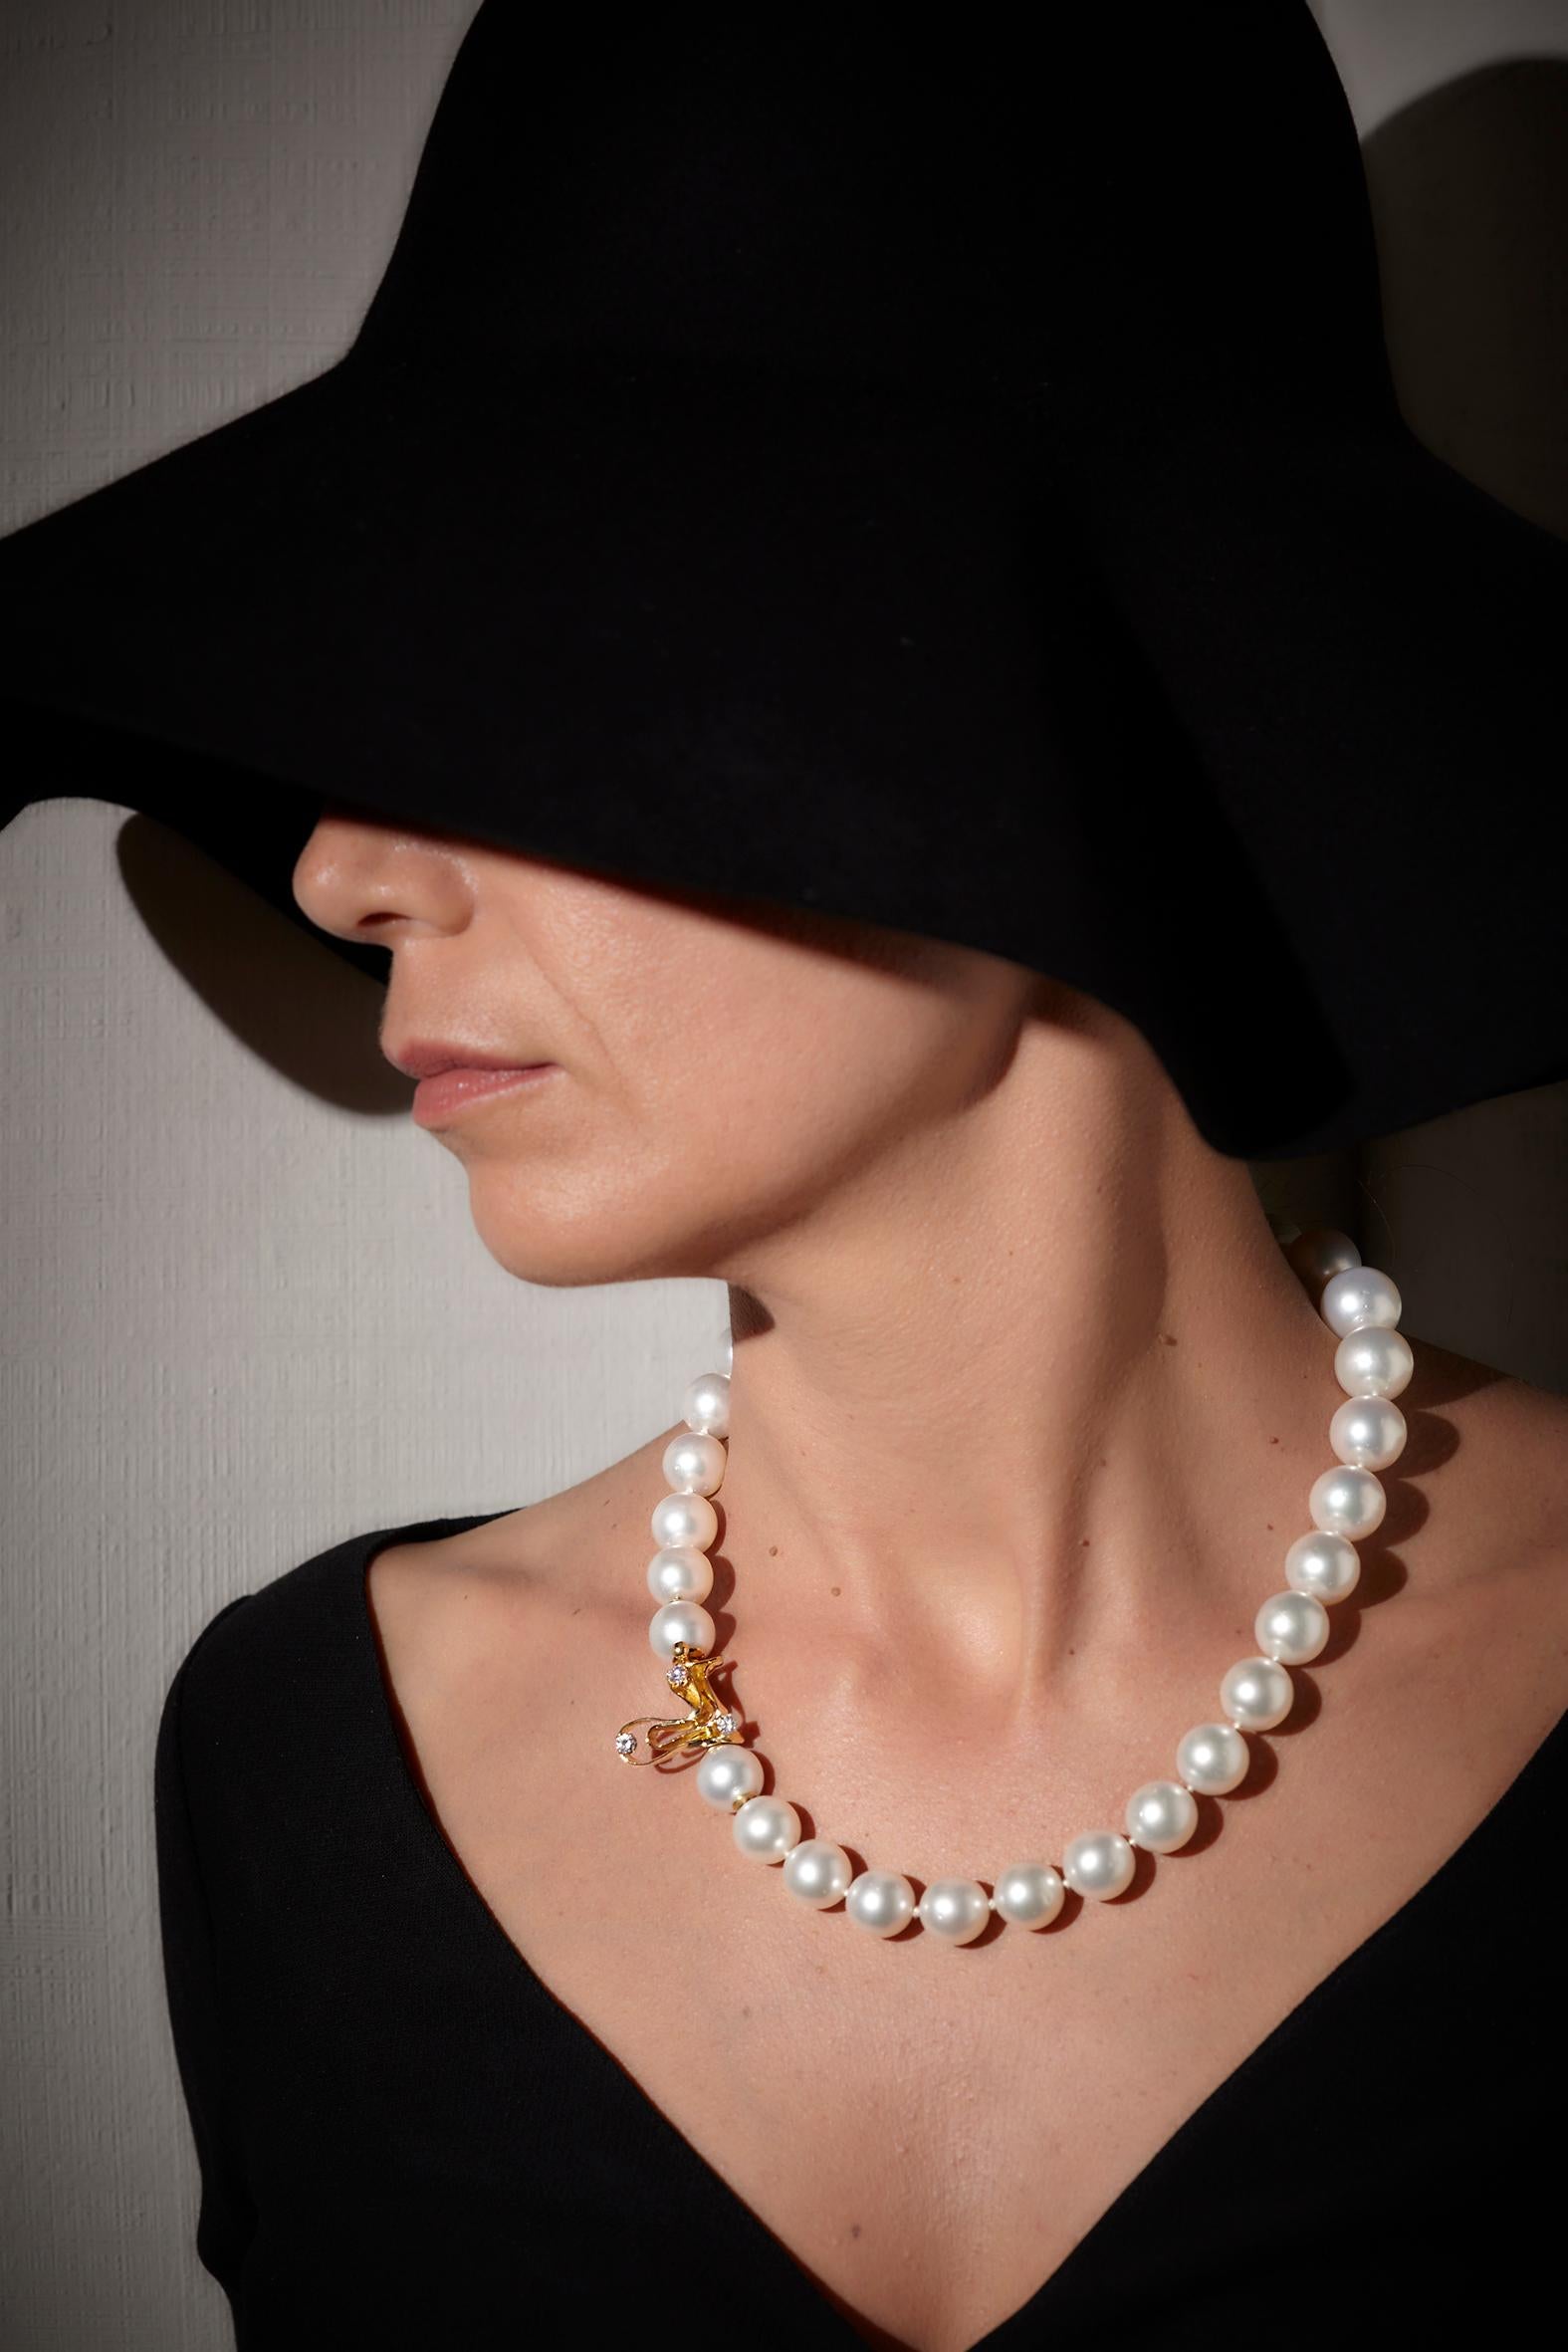 Perles des mers du Sud australiennes de 620 carats et fermoir en or 18 carats avec diamants
Libérez votre potentiel divin avec le collier de perles Sirio. 
Les pierres précieuses et les métaux sont nettoyés énergétiquement pour émettre leurs